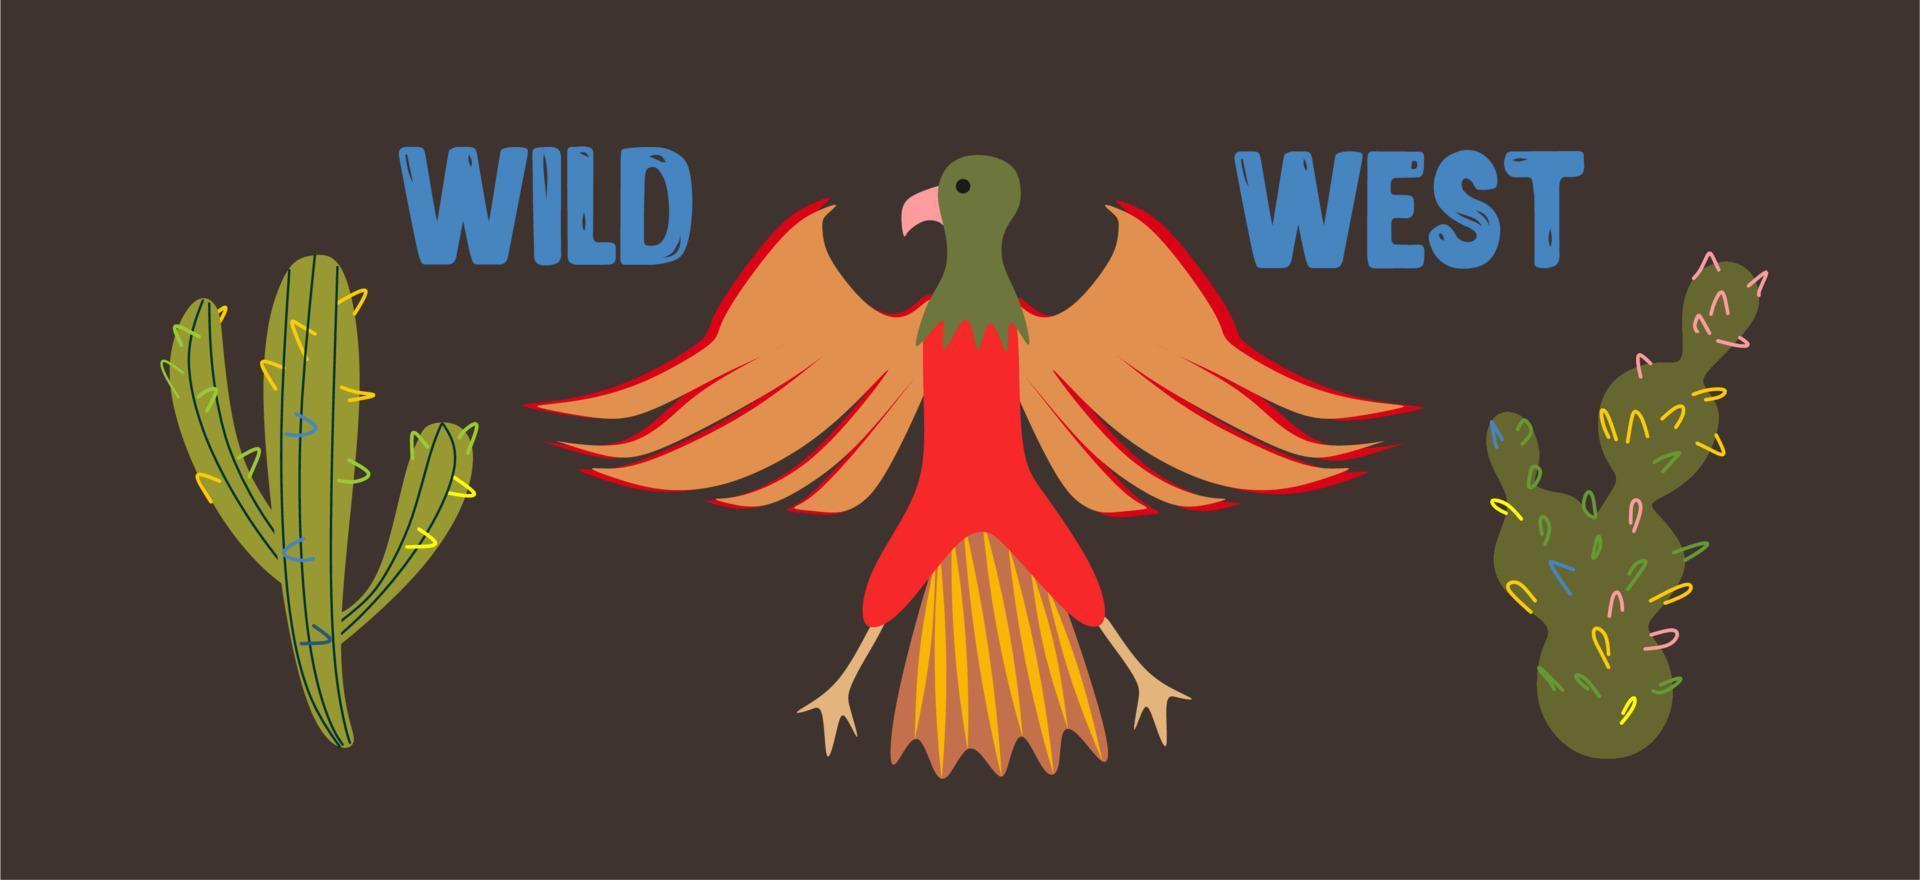 salvaje oeste. un águila en el medio, dos cactus diferentes a los lados. estilo plano, cartón. vector